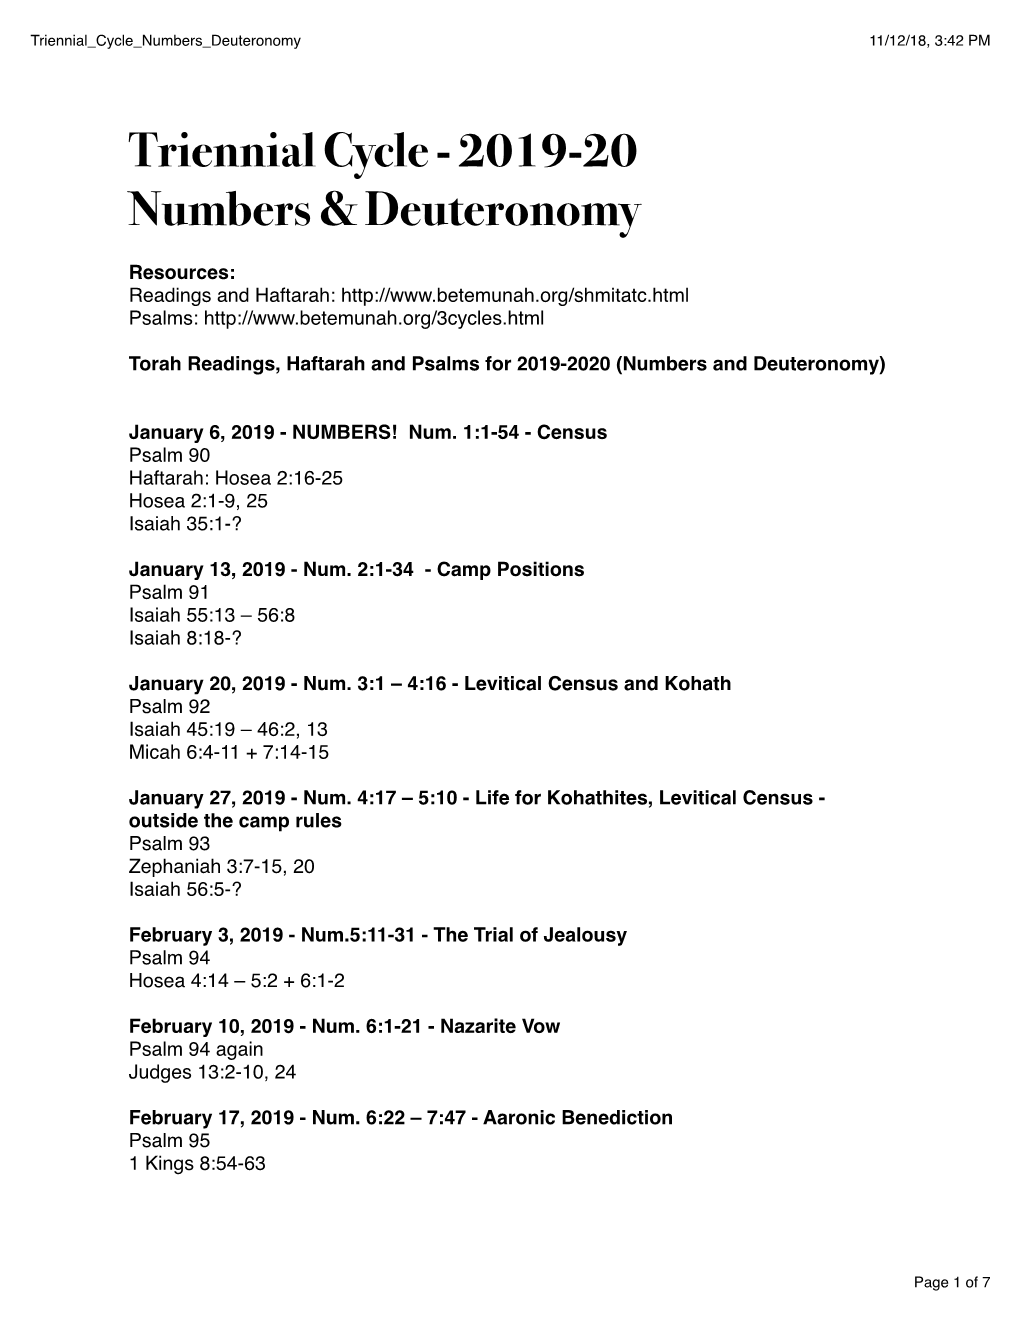 Triennial Cycle - 2019-20 Numbers & Deuteronomy